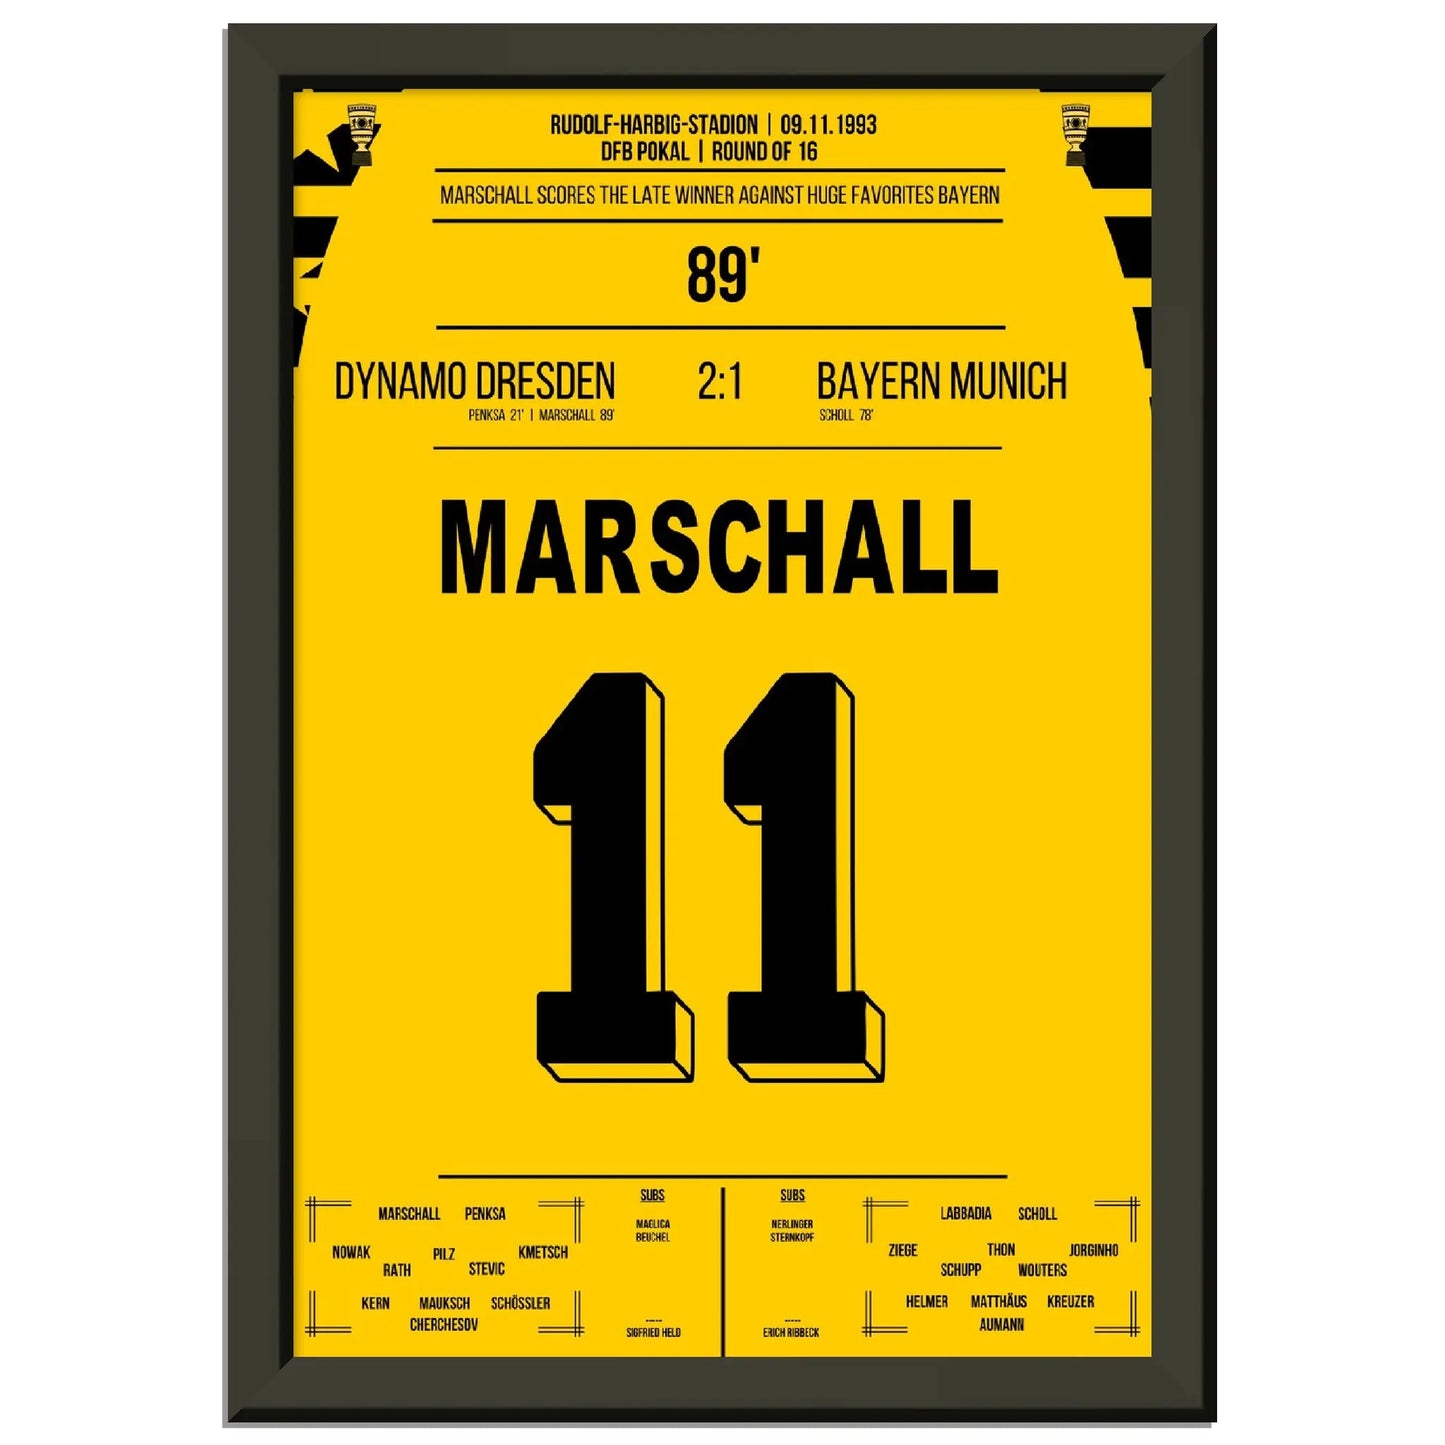 Pokalsensation durch Marschall - Dresden besiegt Bayern im DFB Pokal Achtelfinale 1993 